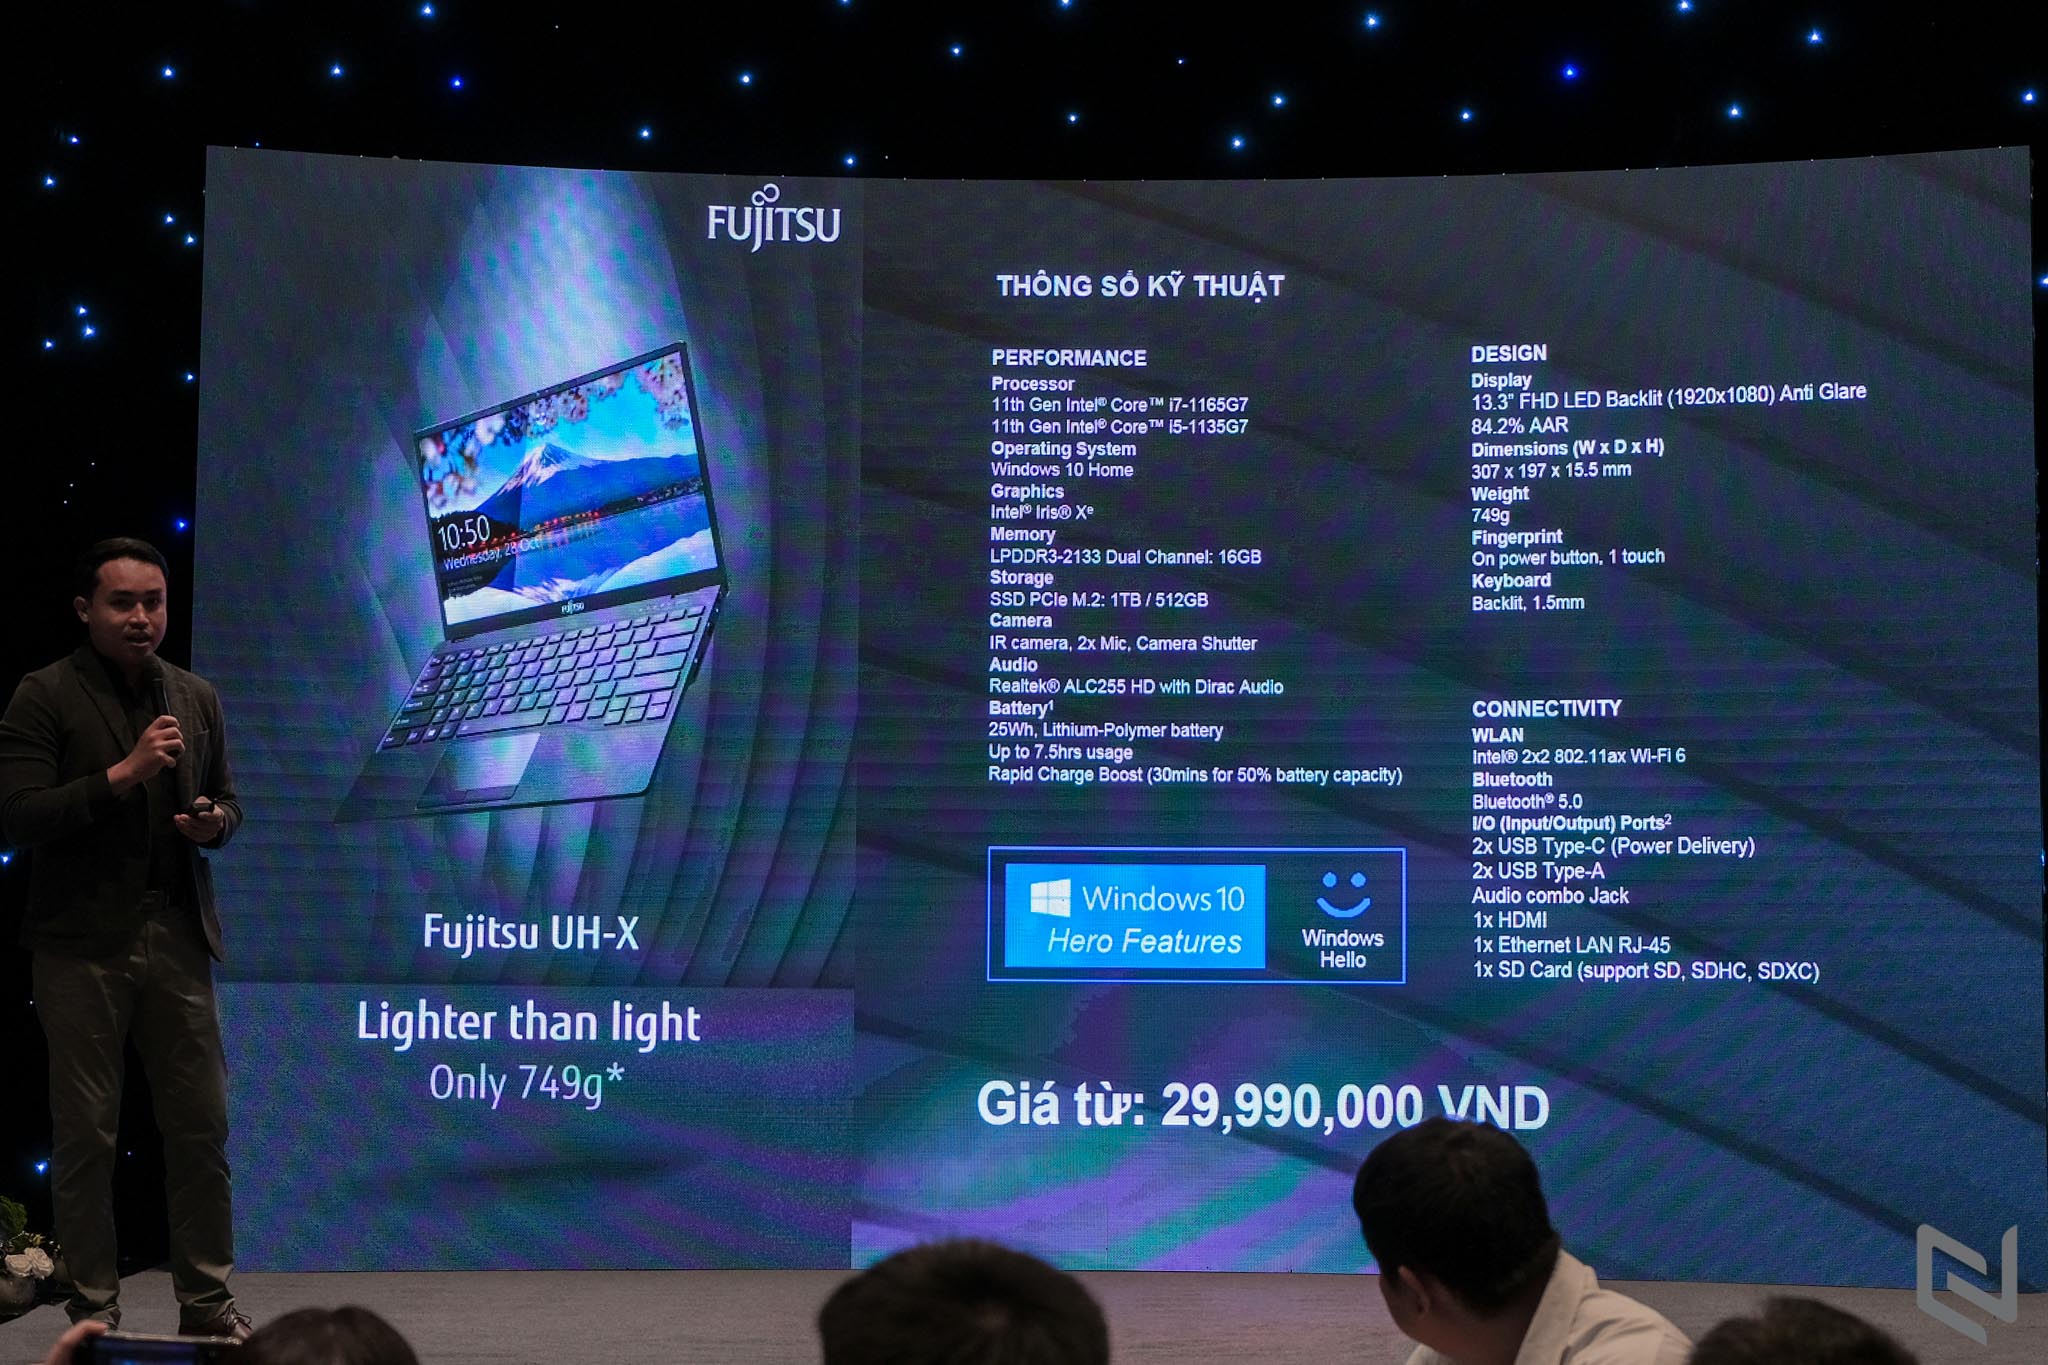 Ra mắt laptop siêu mỏng nhẹ Fujitsu UH-X tại Việt Nam, giá từ 29,990,000 VND